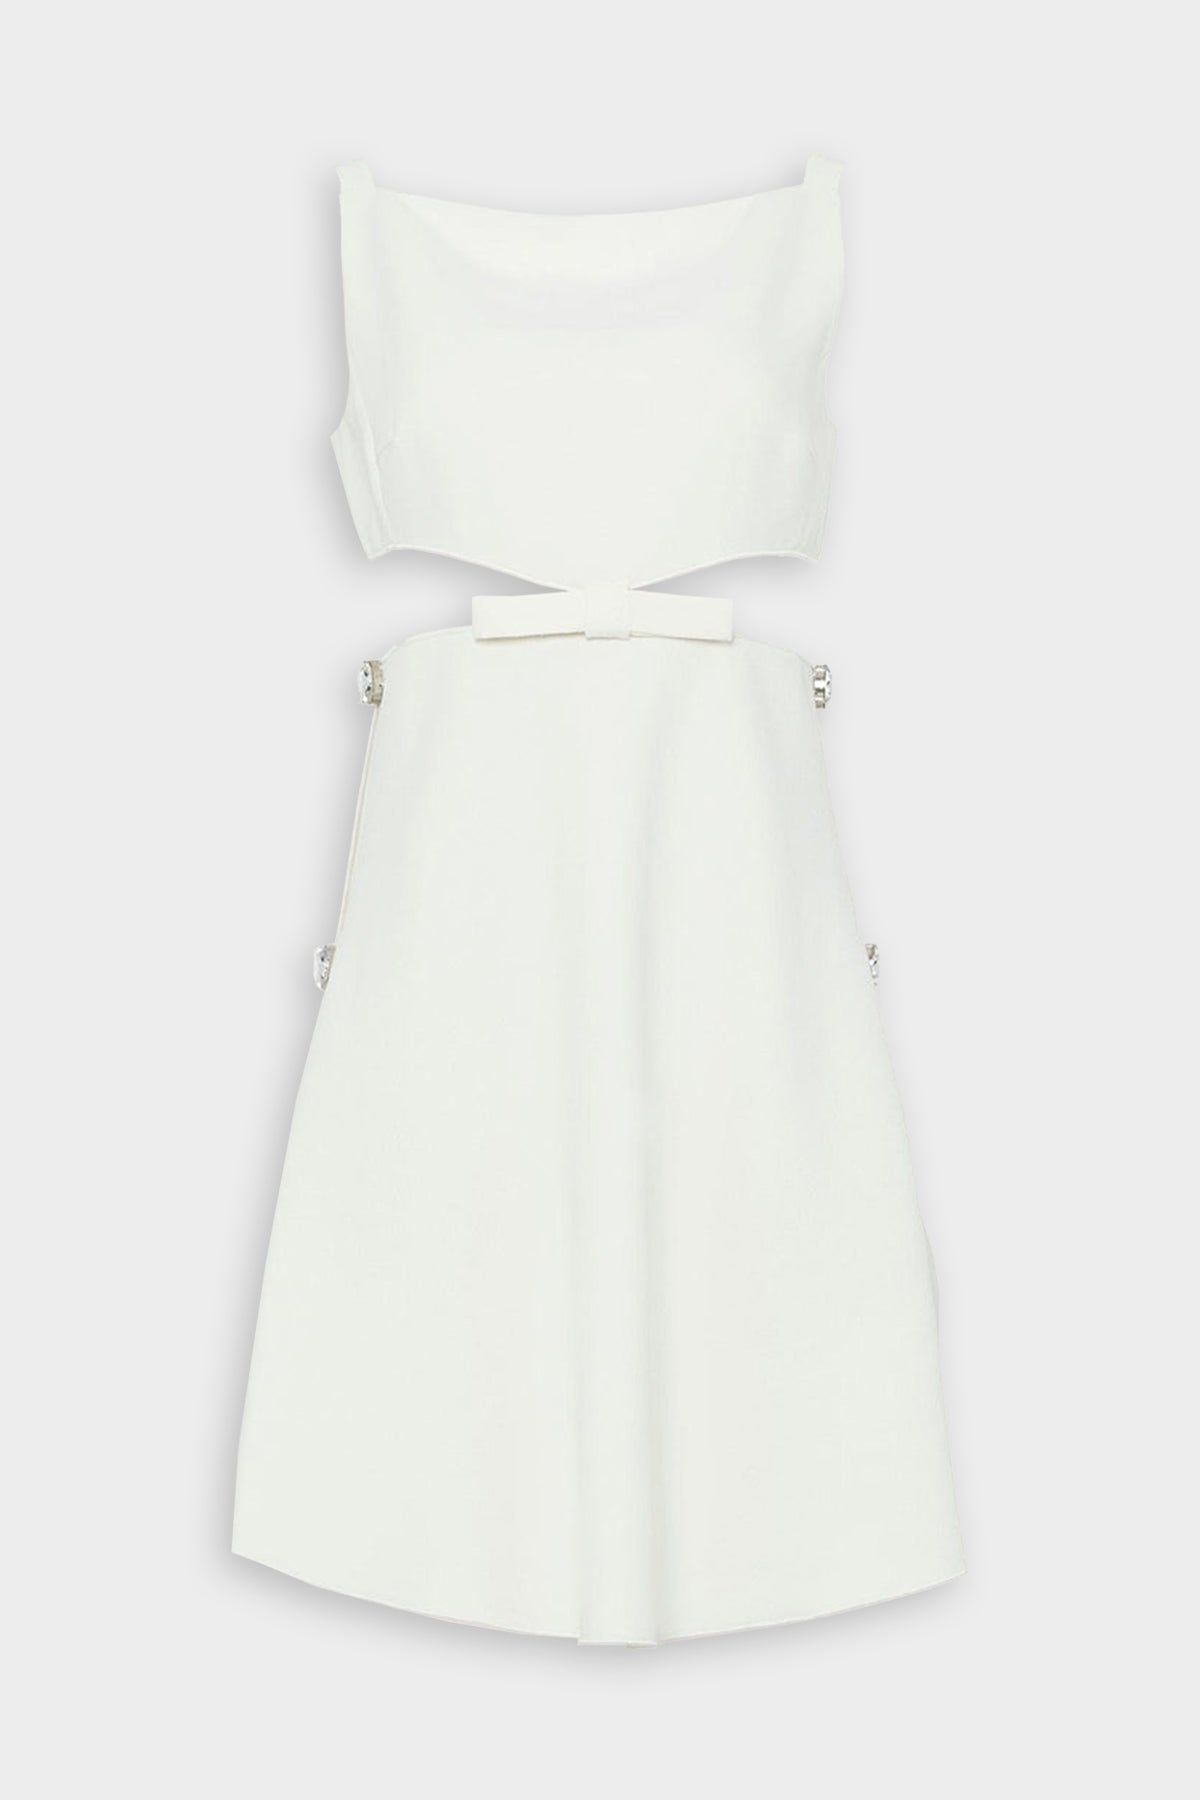 Sleeveless Bow Short Dress in Ivory - shop-olivia.com